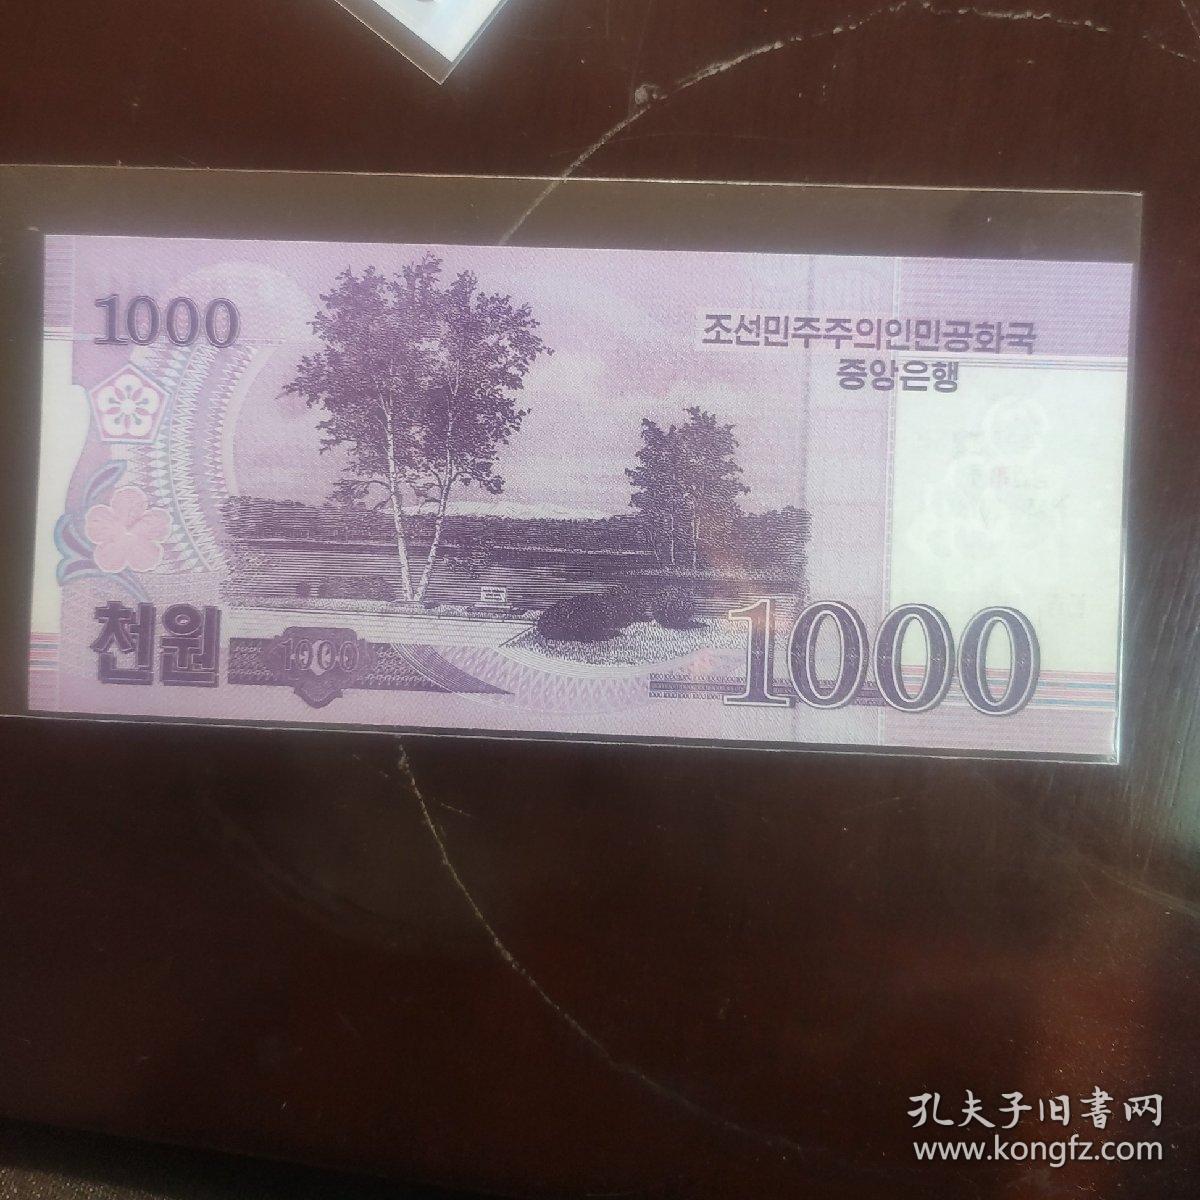 朝鲜2018年朝鲜人民民主主义共和国成立70周年纪念钞1000元纸币一枚.